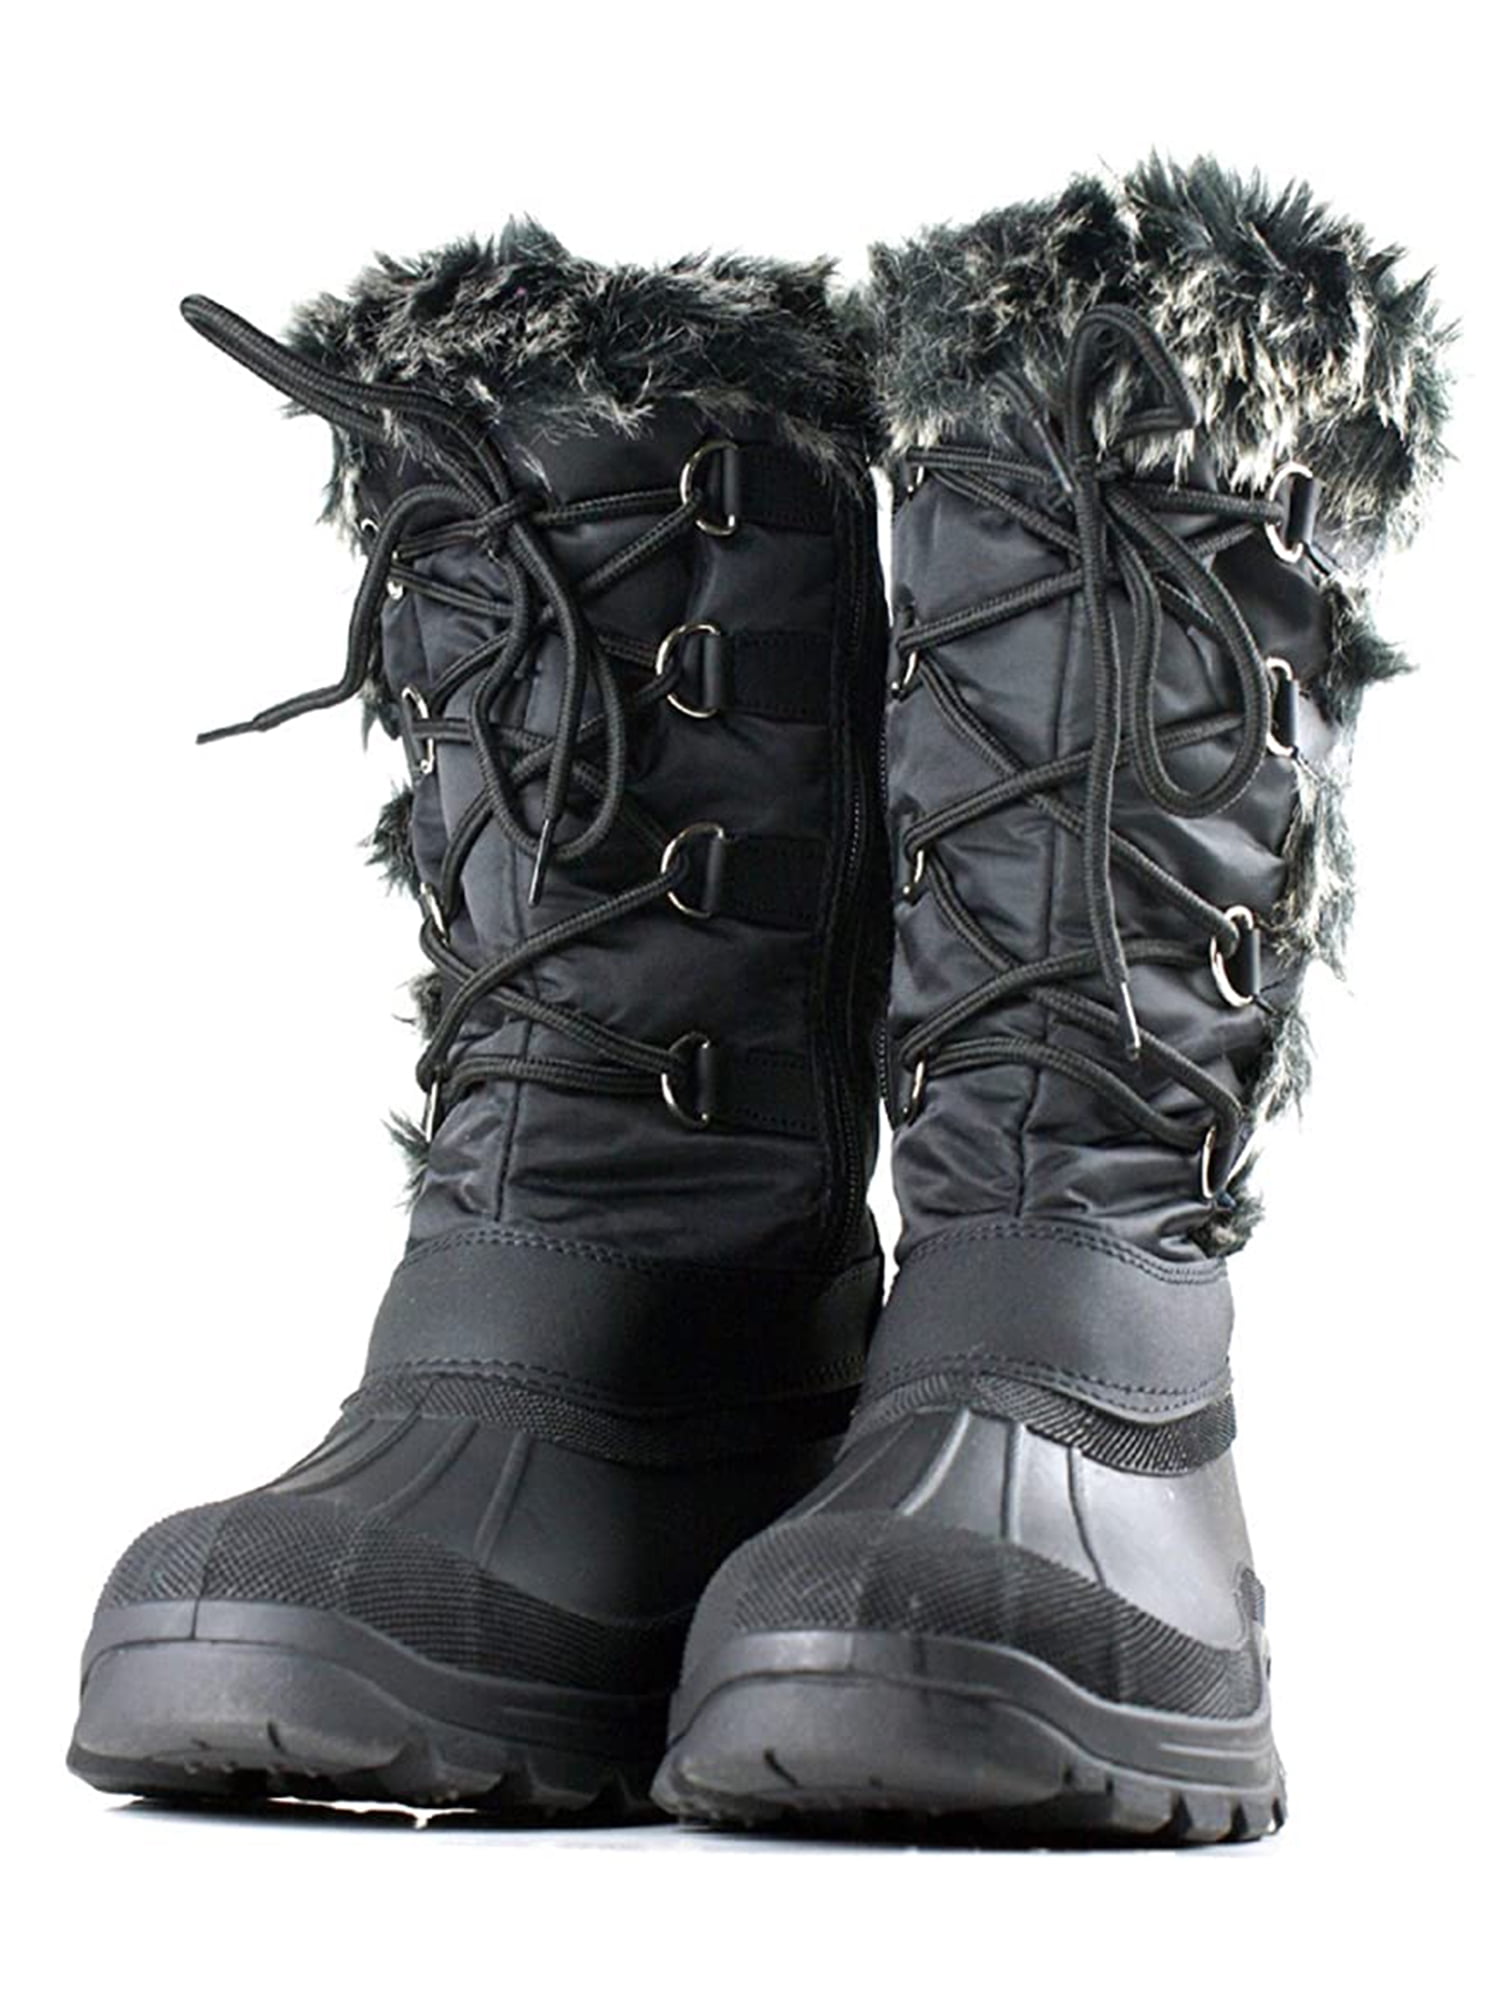 walmart ladies winter boots